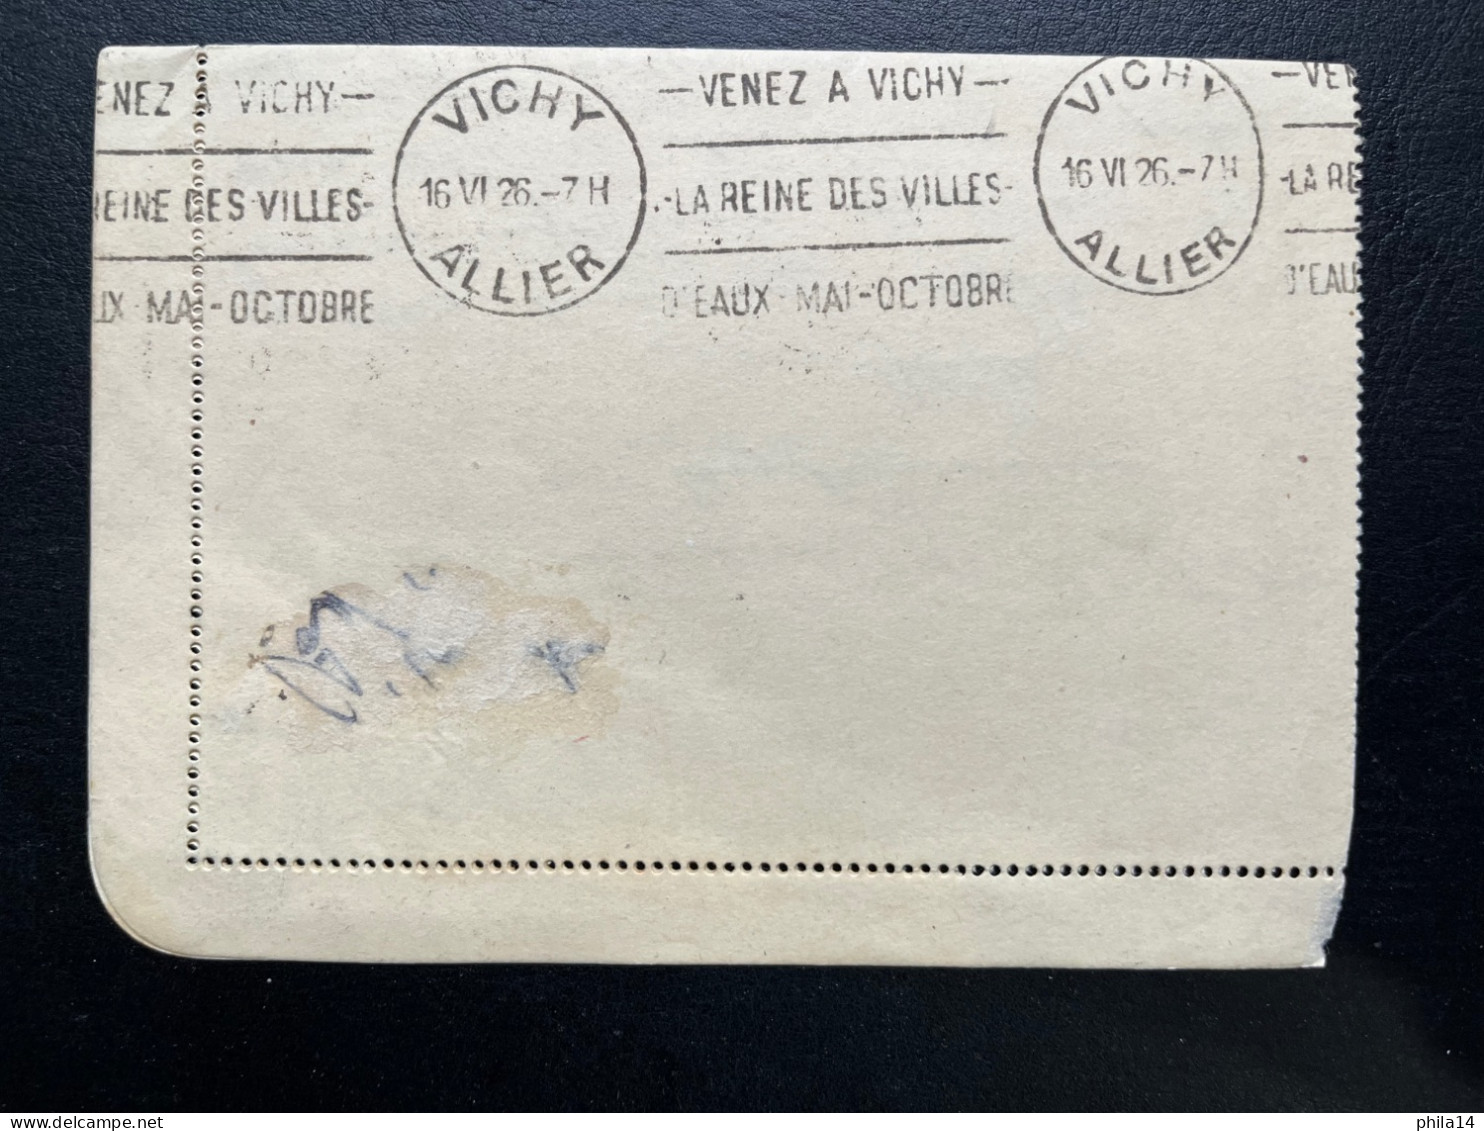 40c SEMEUSE SUR CARTE LETTRE / PARIS 47 POUR VICHY 1926 / HOTEL WINDSOR ETOILE - Cartoline-lettere